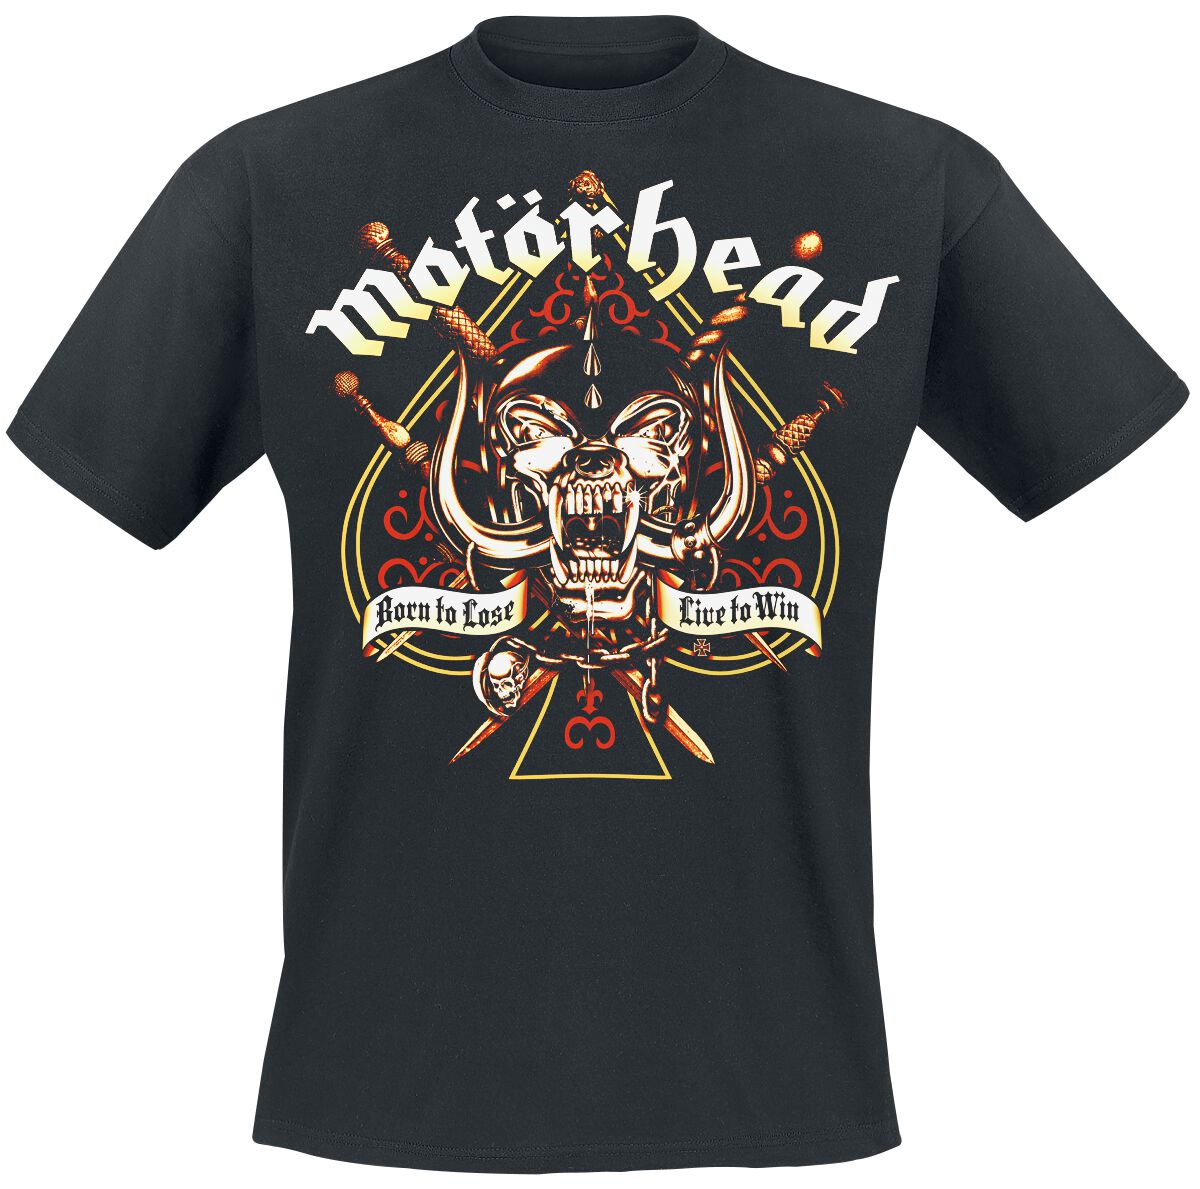 Motörhead T-Shirt - Sword Spade - L bis 4XL - für Männer - Größe 3XL - schwarz  - Lizenziertes Merchandise!